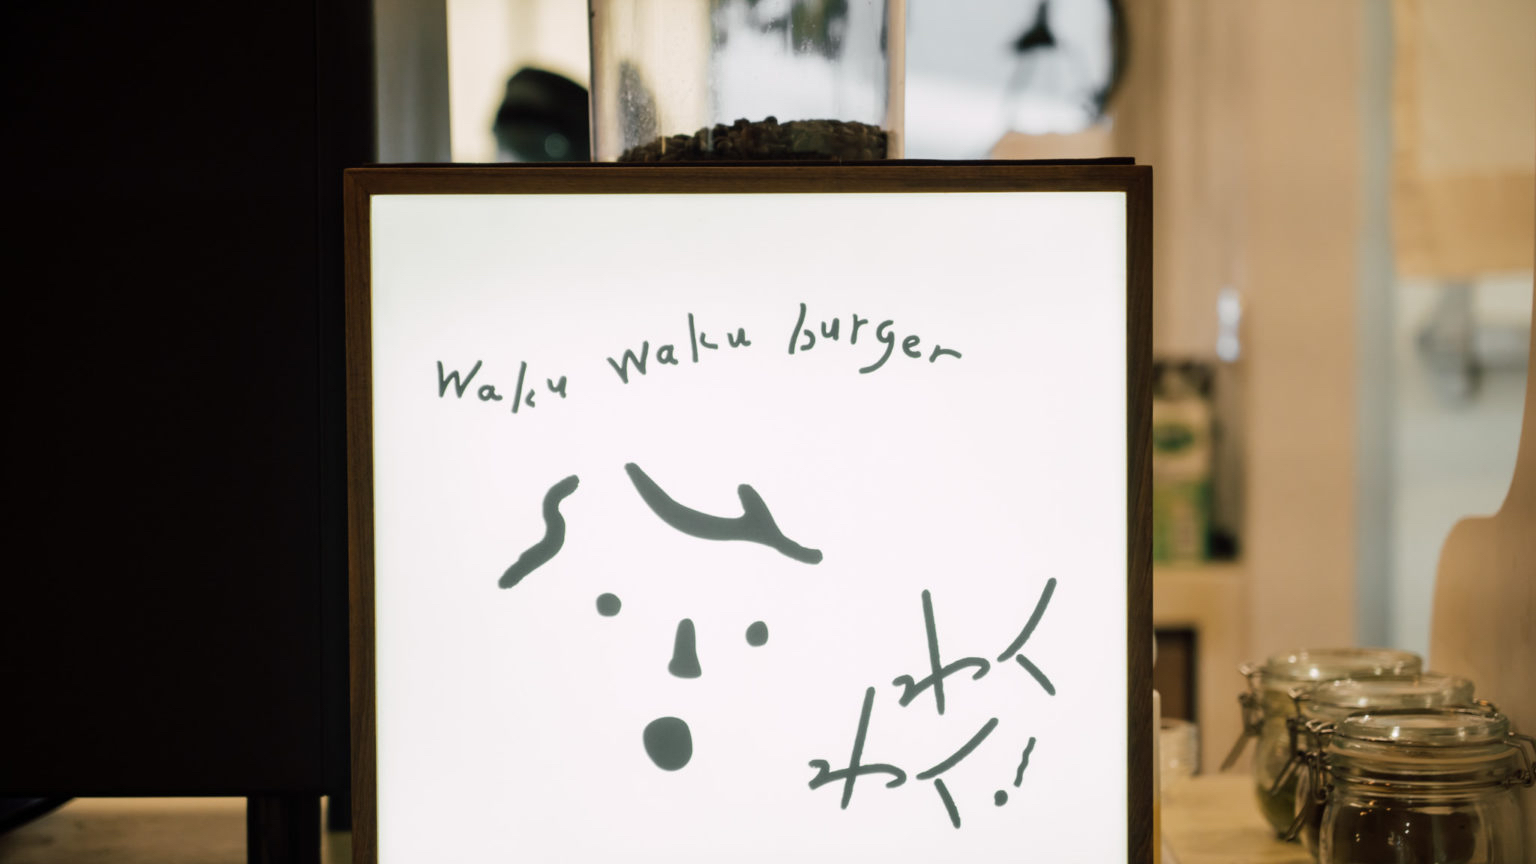 日系懷舊文青餐廳wakuwaku—集結一切對美好事物的期待